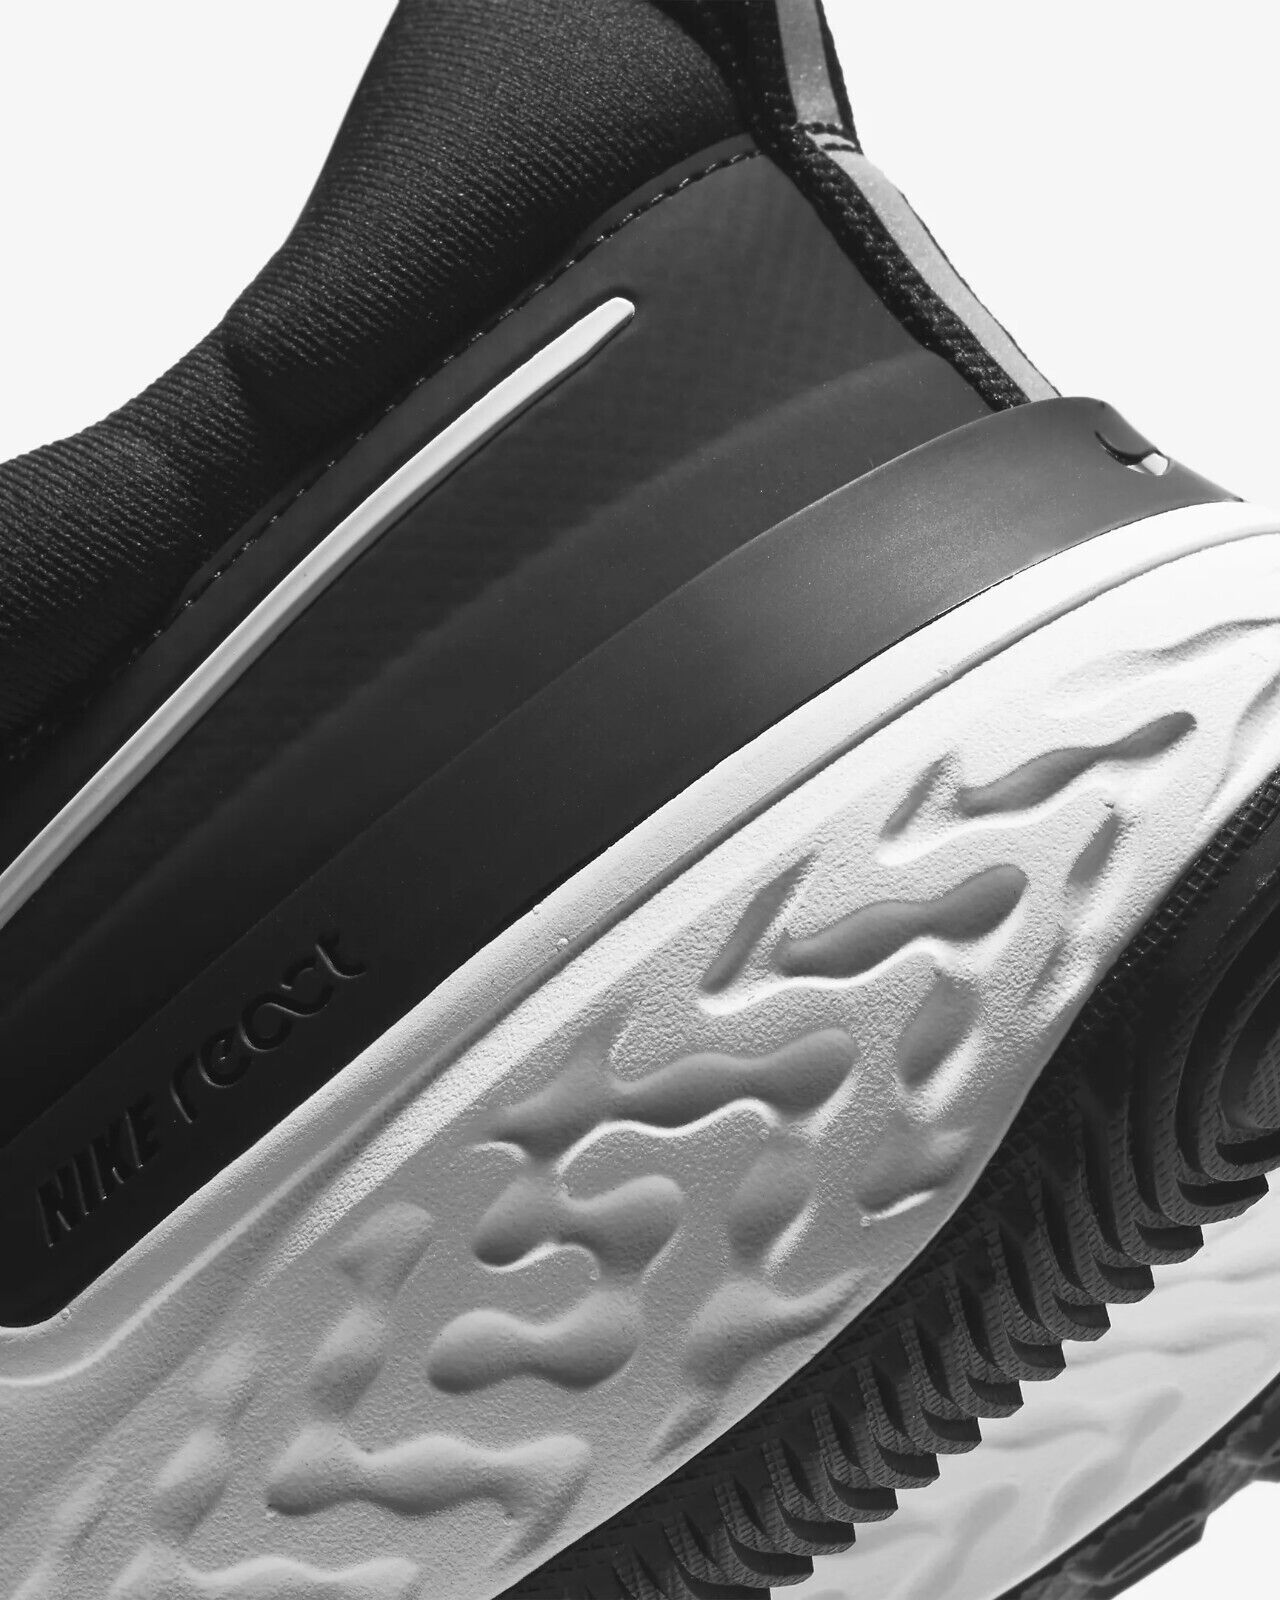 Men's Nike React Miller 2 Road Running Shoes, CW7121 001 Multi Sizes Black/Smoke Grey/White